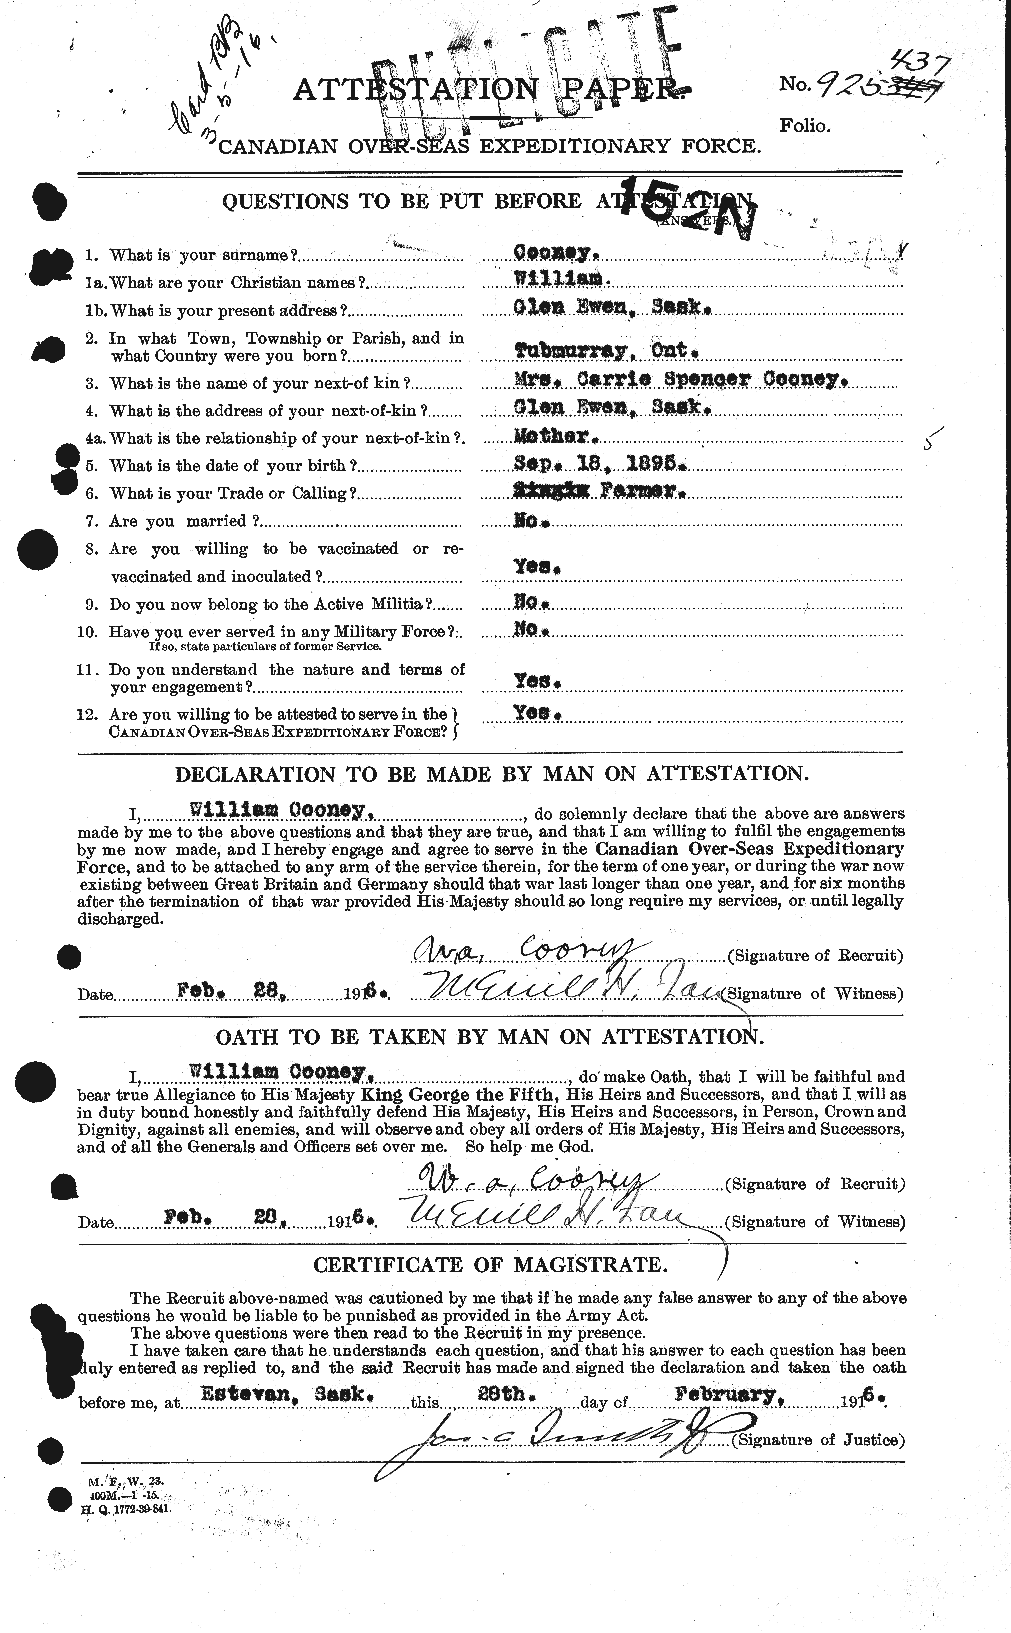 Dossiers du Personnel de la Première Guerre mondiale - CEC 054907a